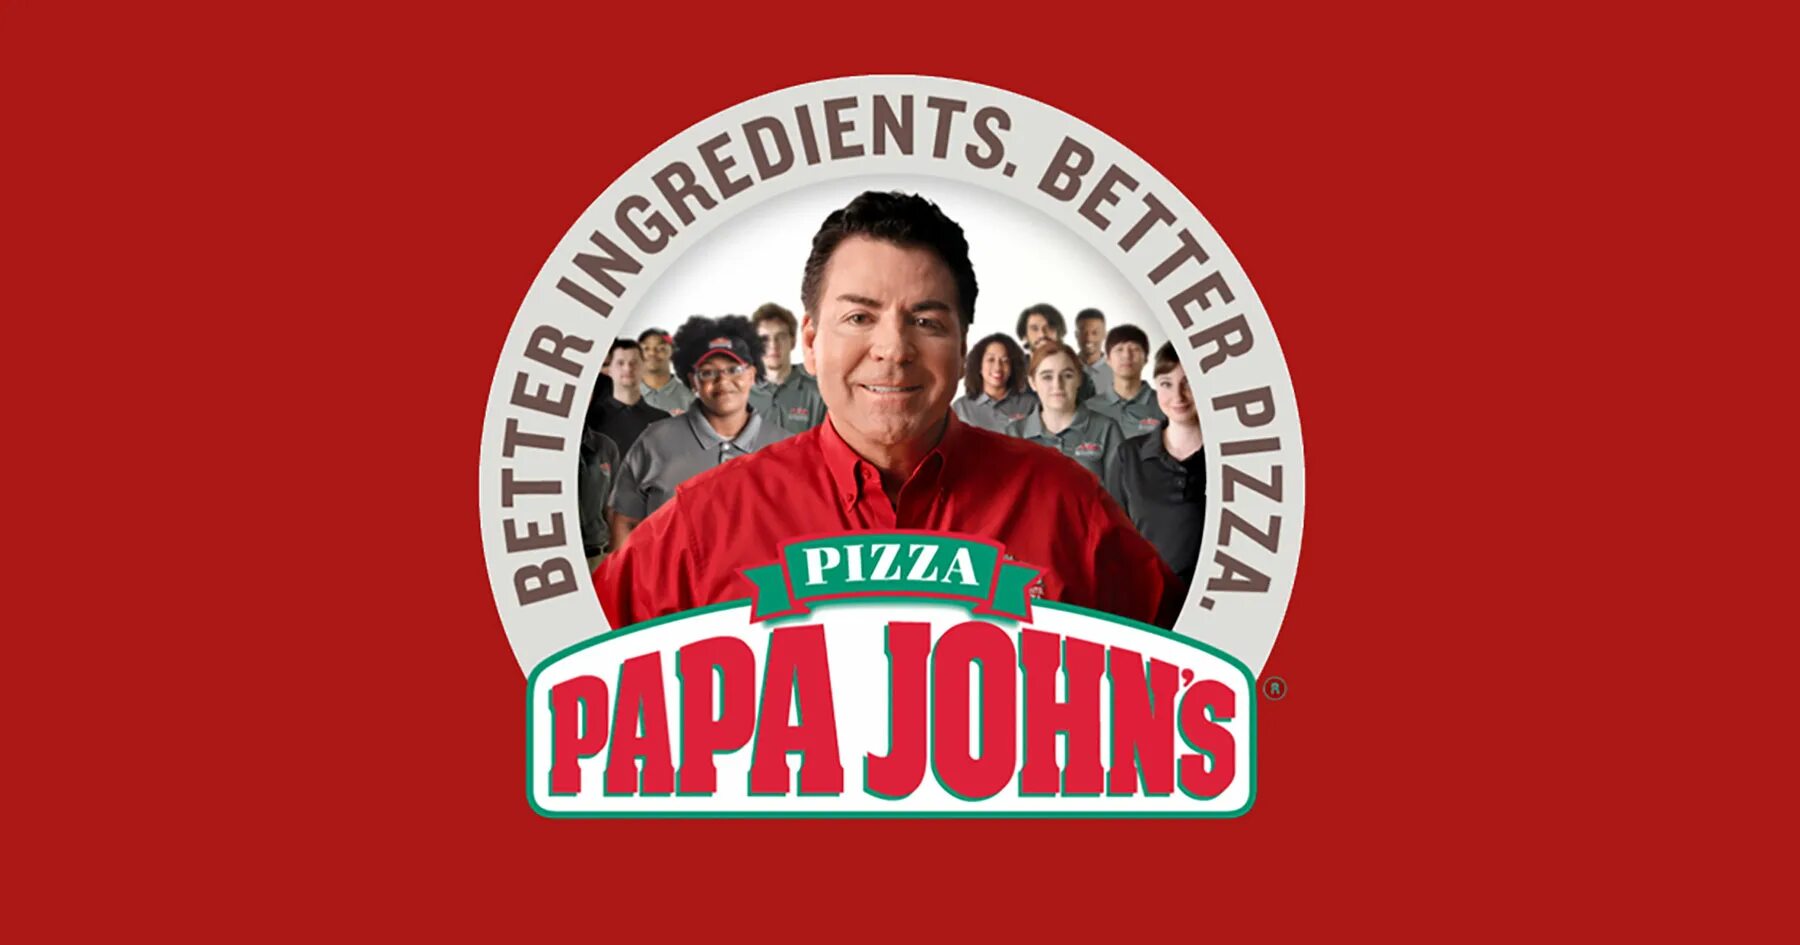 Папа Джонс пицца лого. Джон Шнаттер папа Джонс. Папа Джонс логотип. Пицца папа Джонс логотип. Папа джонс квиз